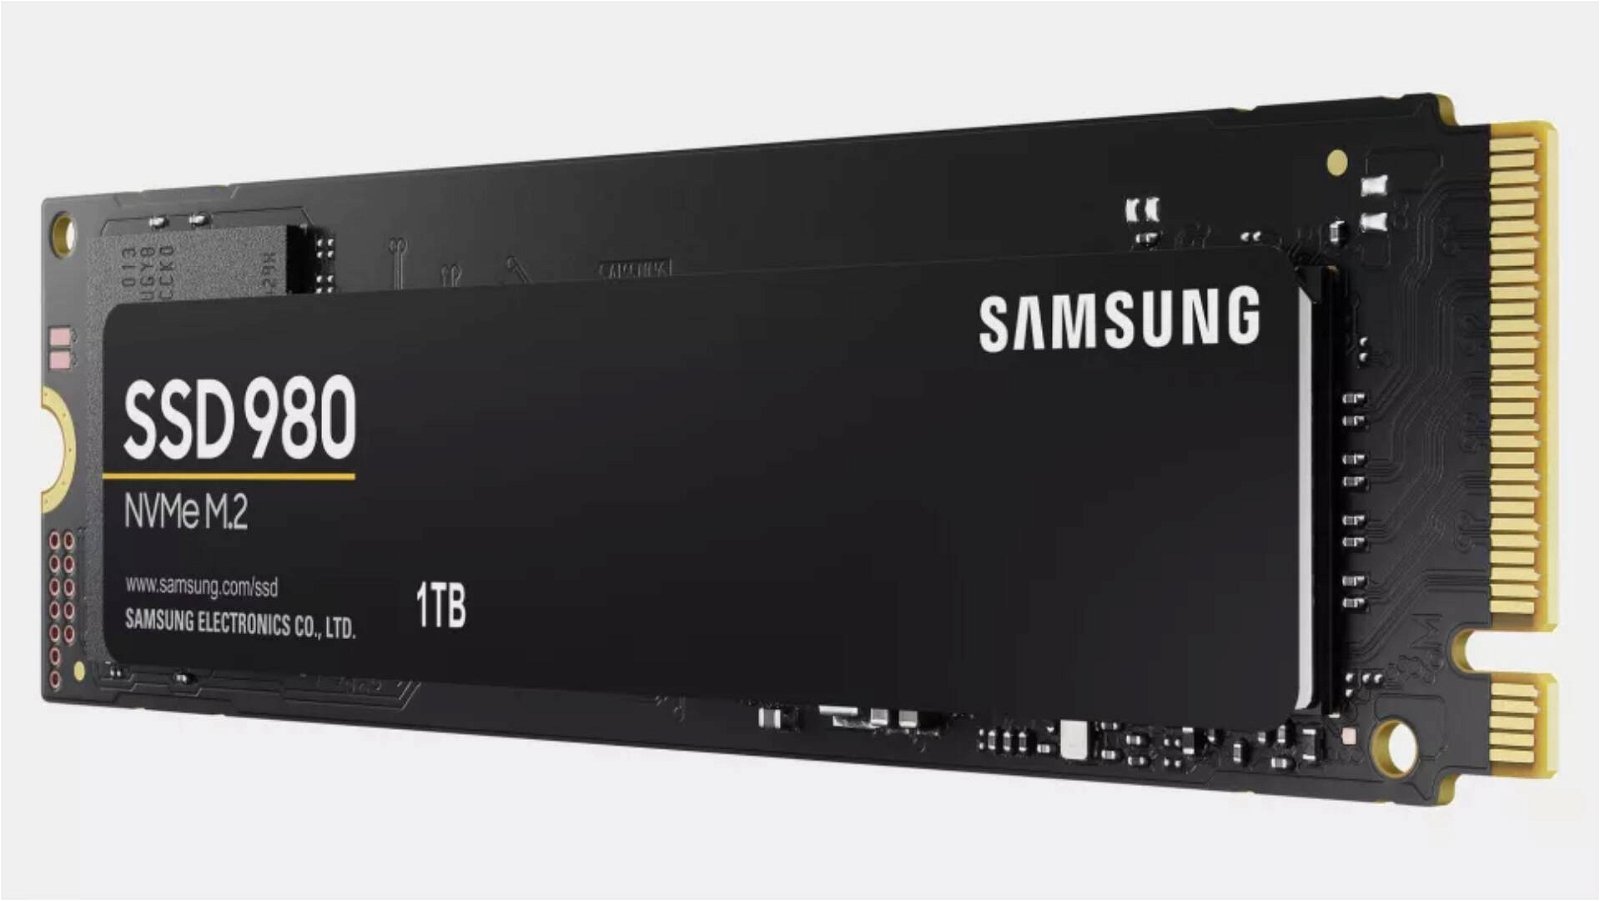 Immagine di Samsung 980, specifiche e prezzi degli SSD consumer senza DRAM